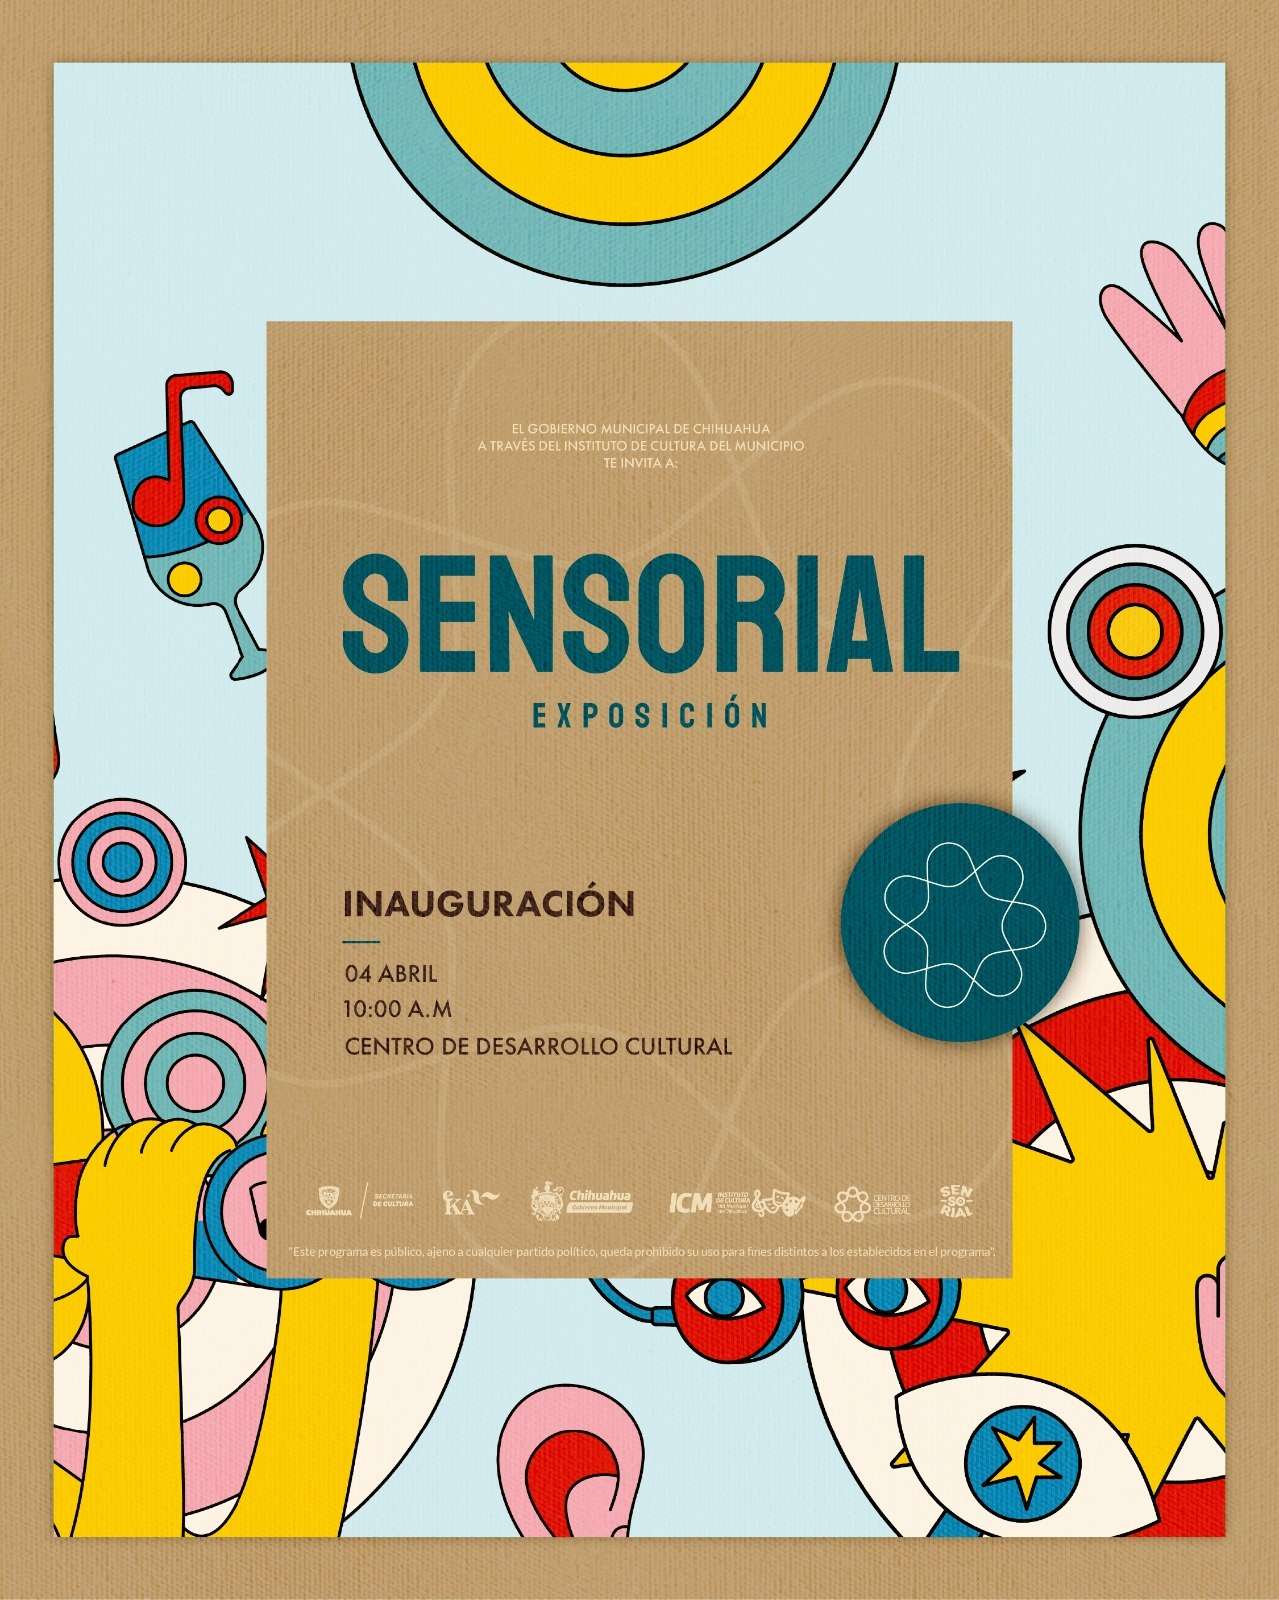 Invitan a la Exposición Sensorial en el Centro de Desarrollo Cultural
